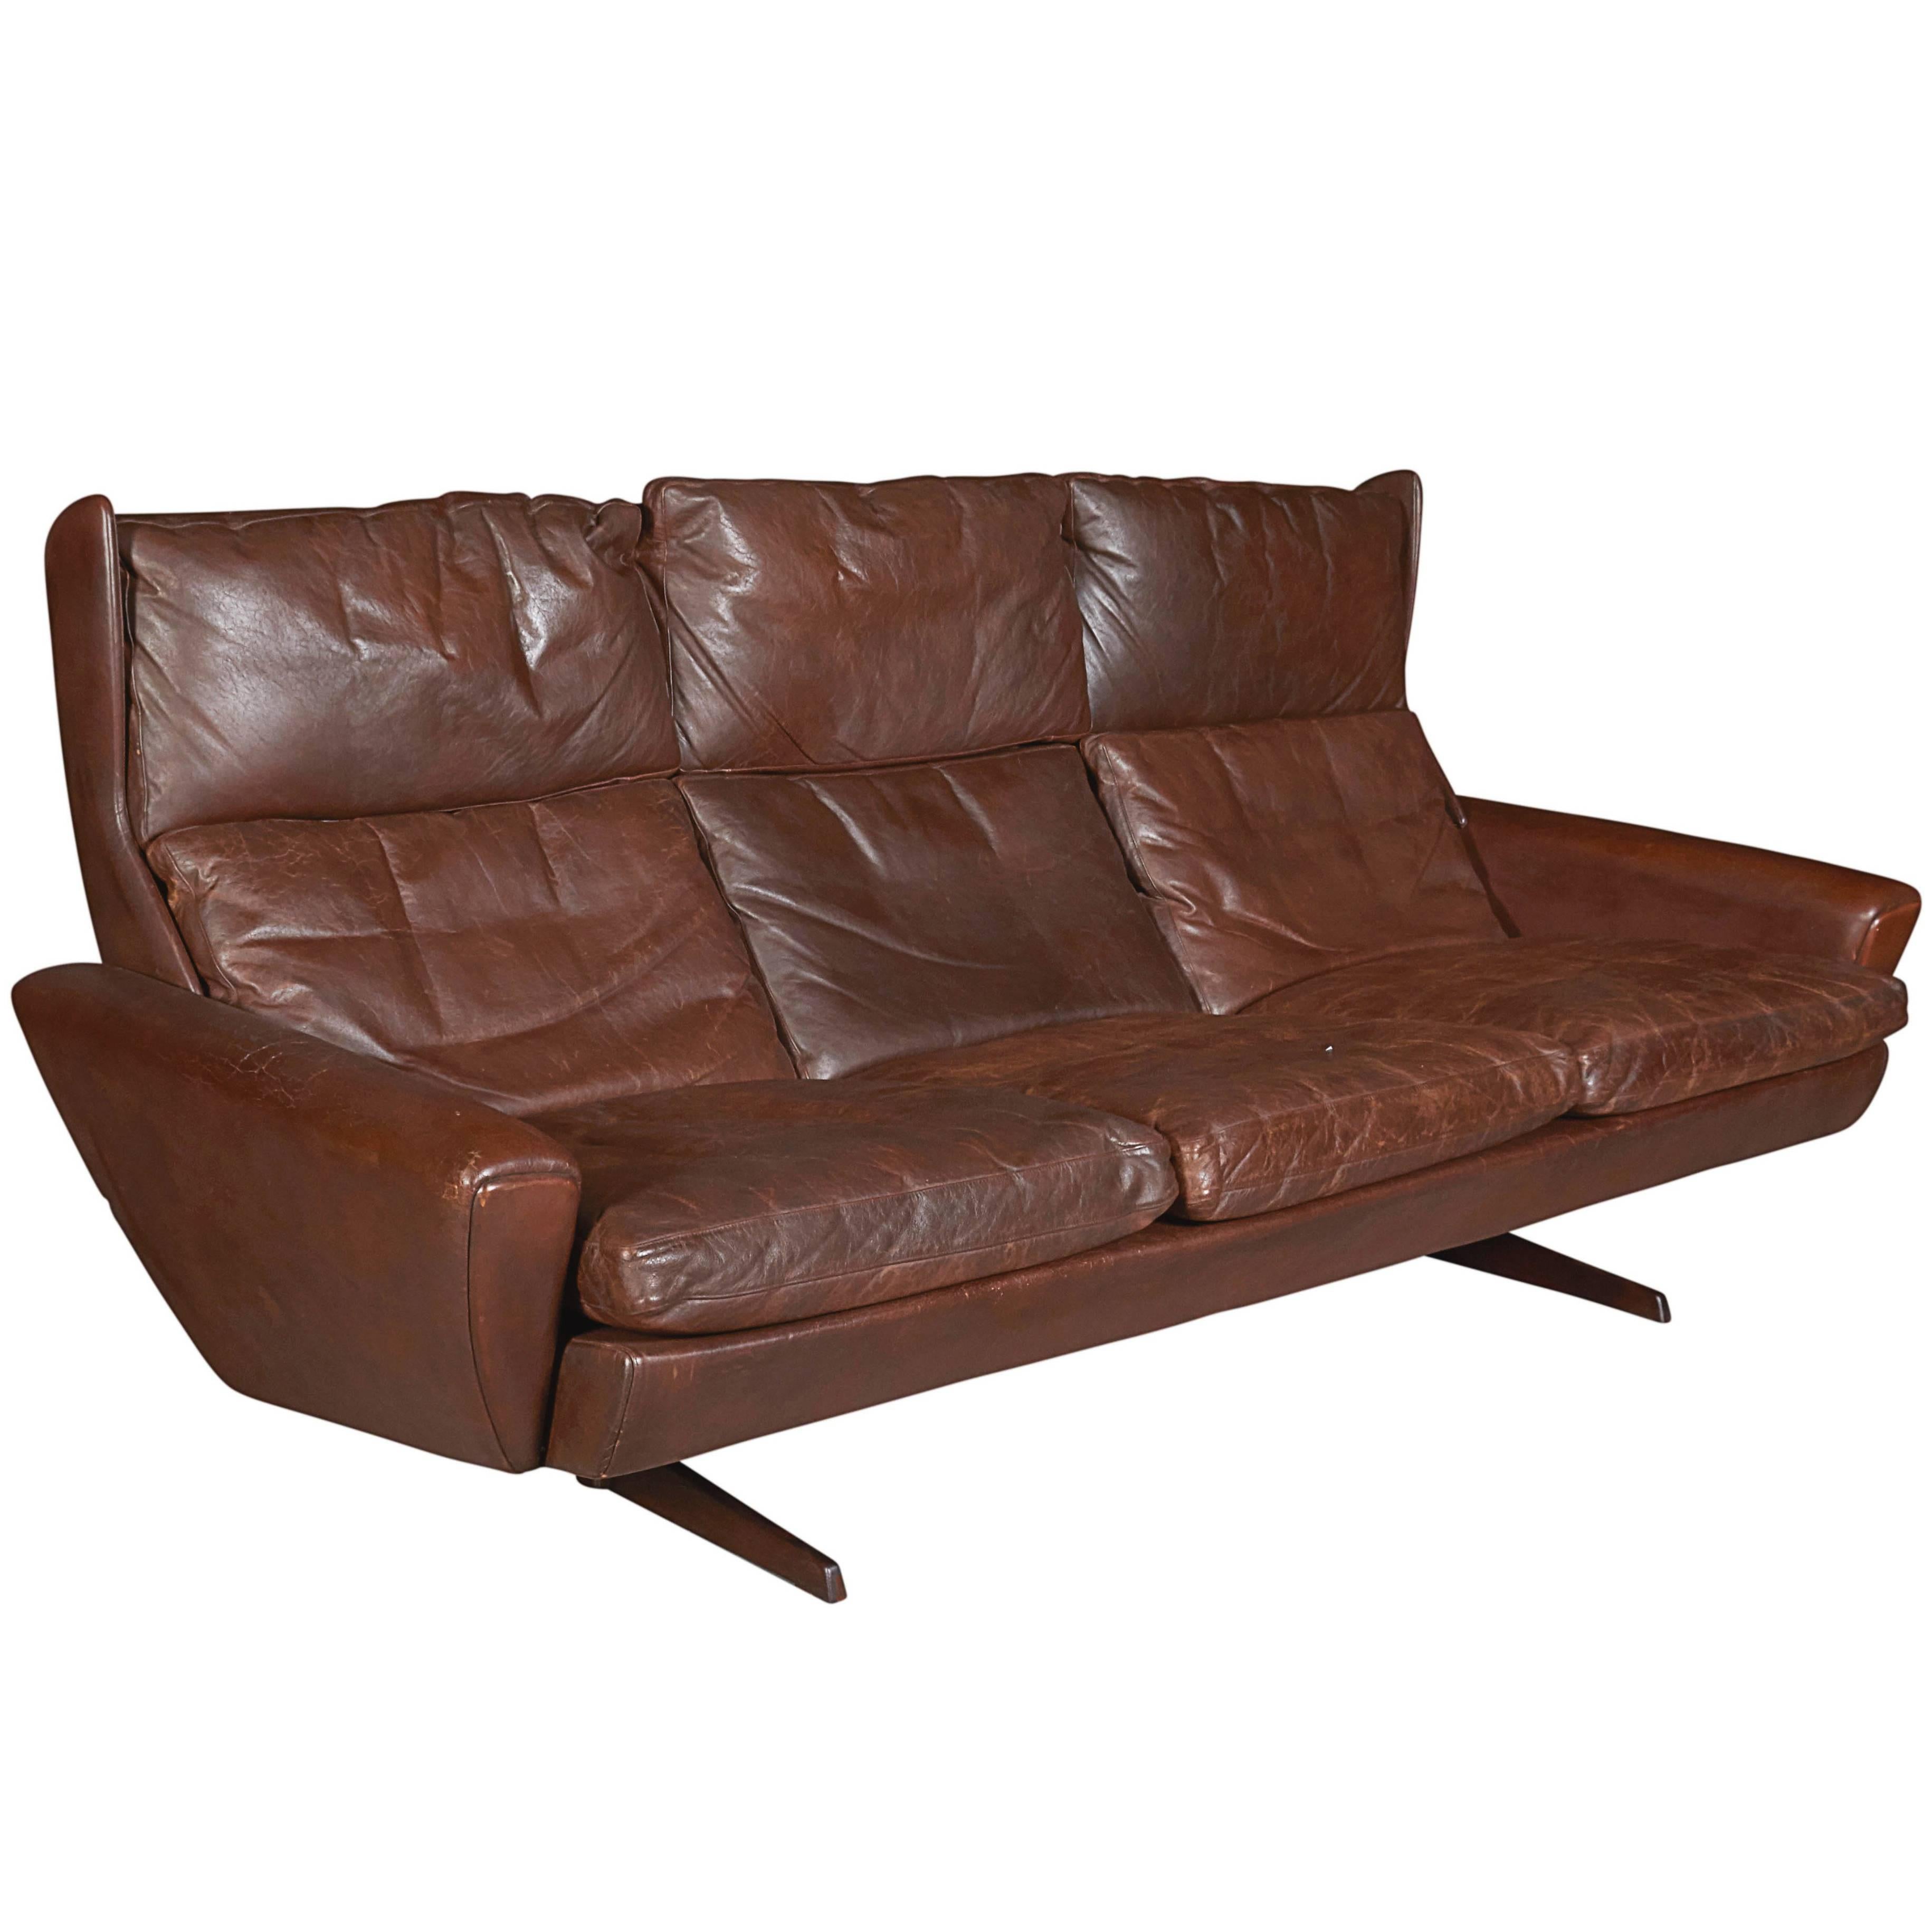 Atomic Brown Leather Sofa by Fredrik Kayser